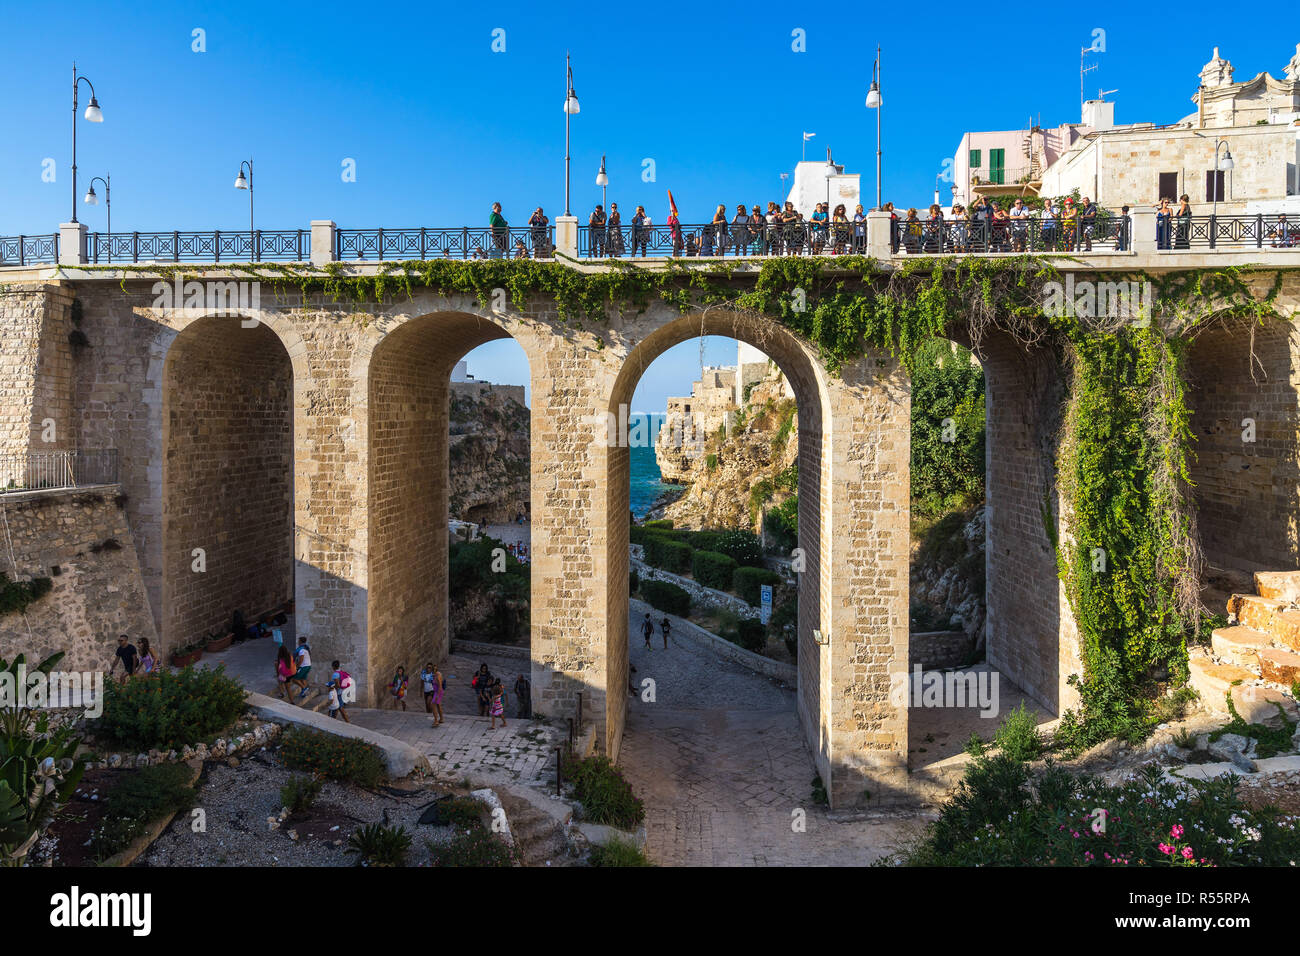 Puente sobre el famoso Lama Monachile playa. Polignano a Mare, Puglia, Italia, agosto de 2017 Foto de stock